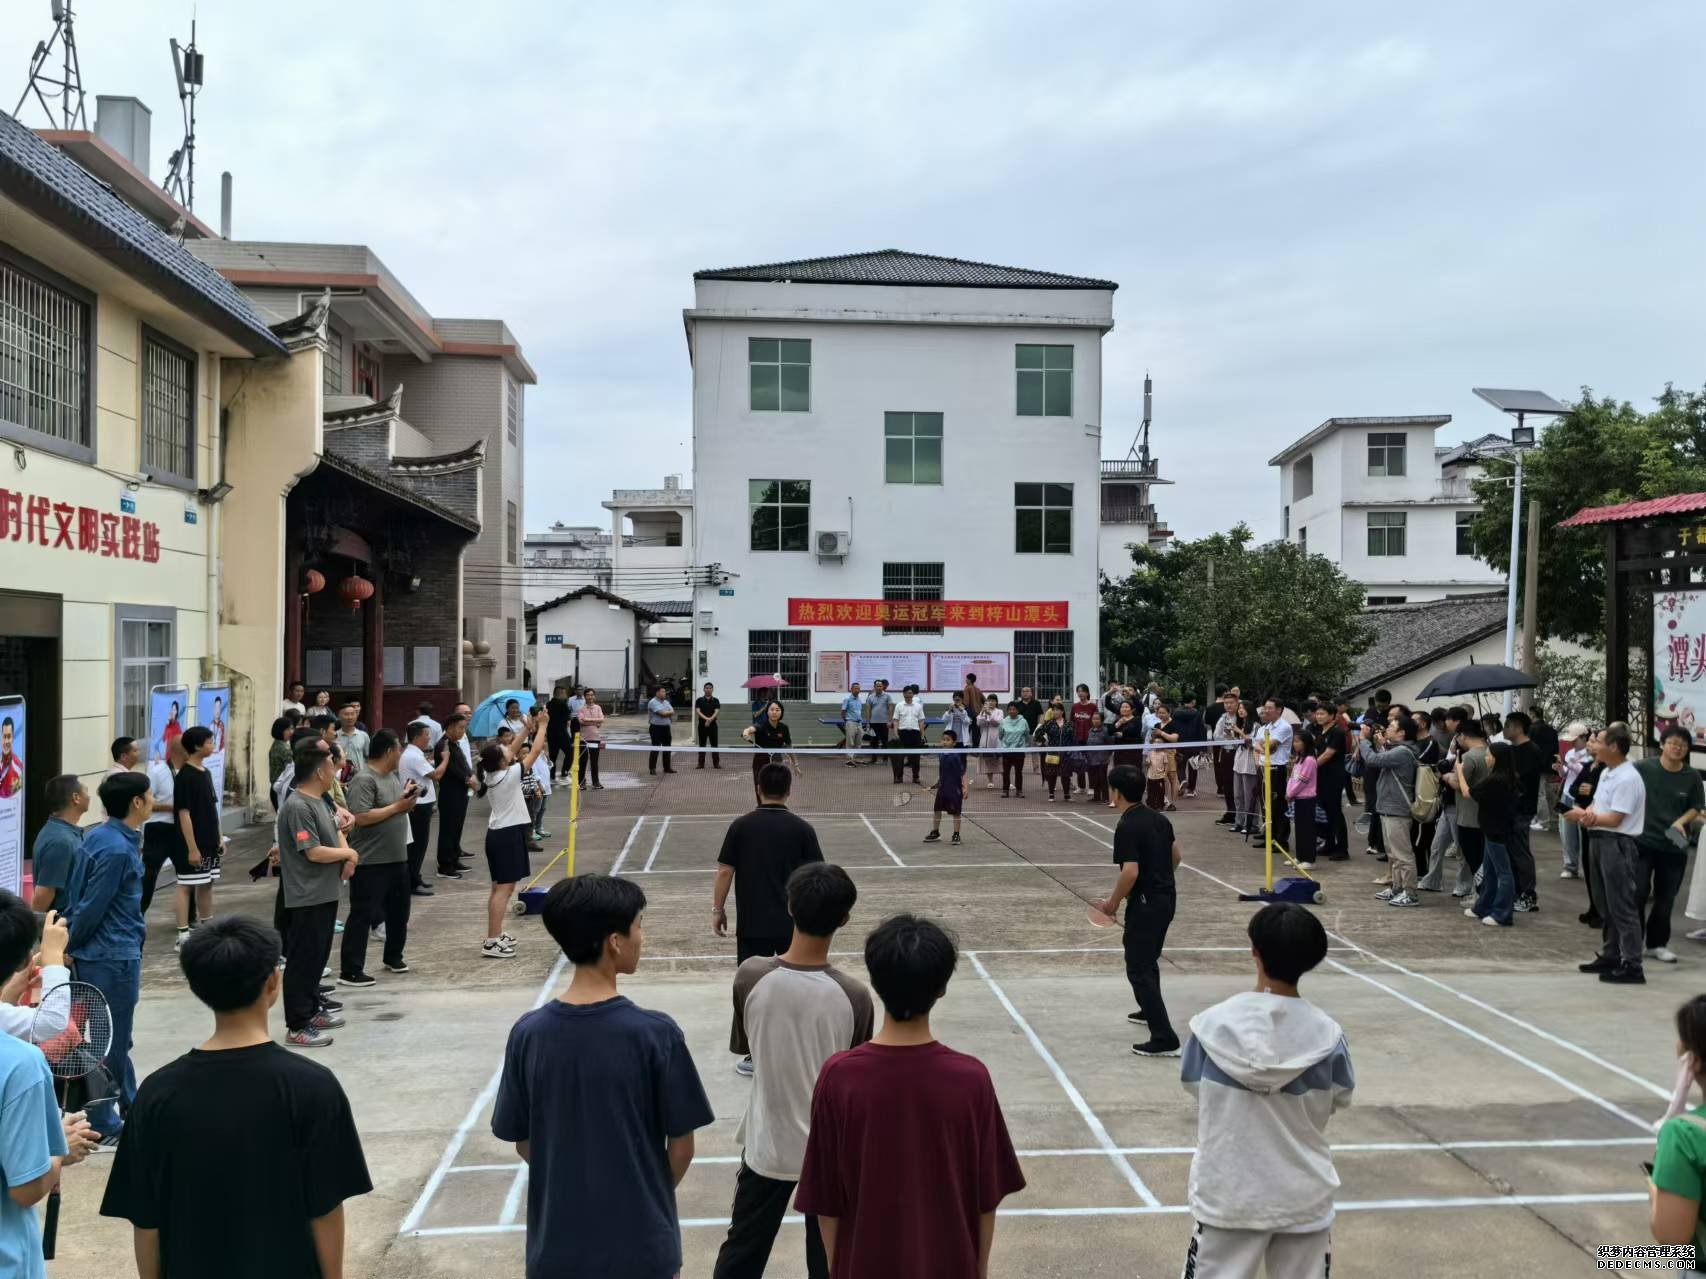 赵芸蕾与潭头社区居民进行羽毛球比赛。人民网记者 杨磊摄